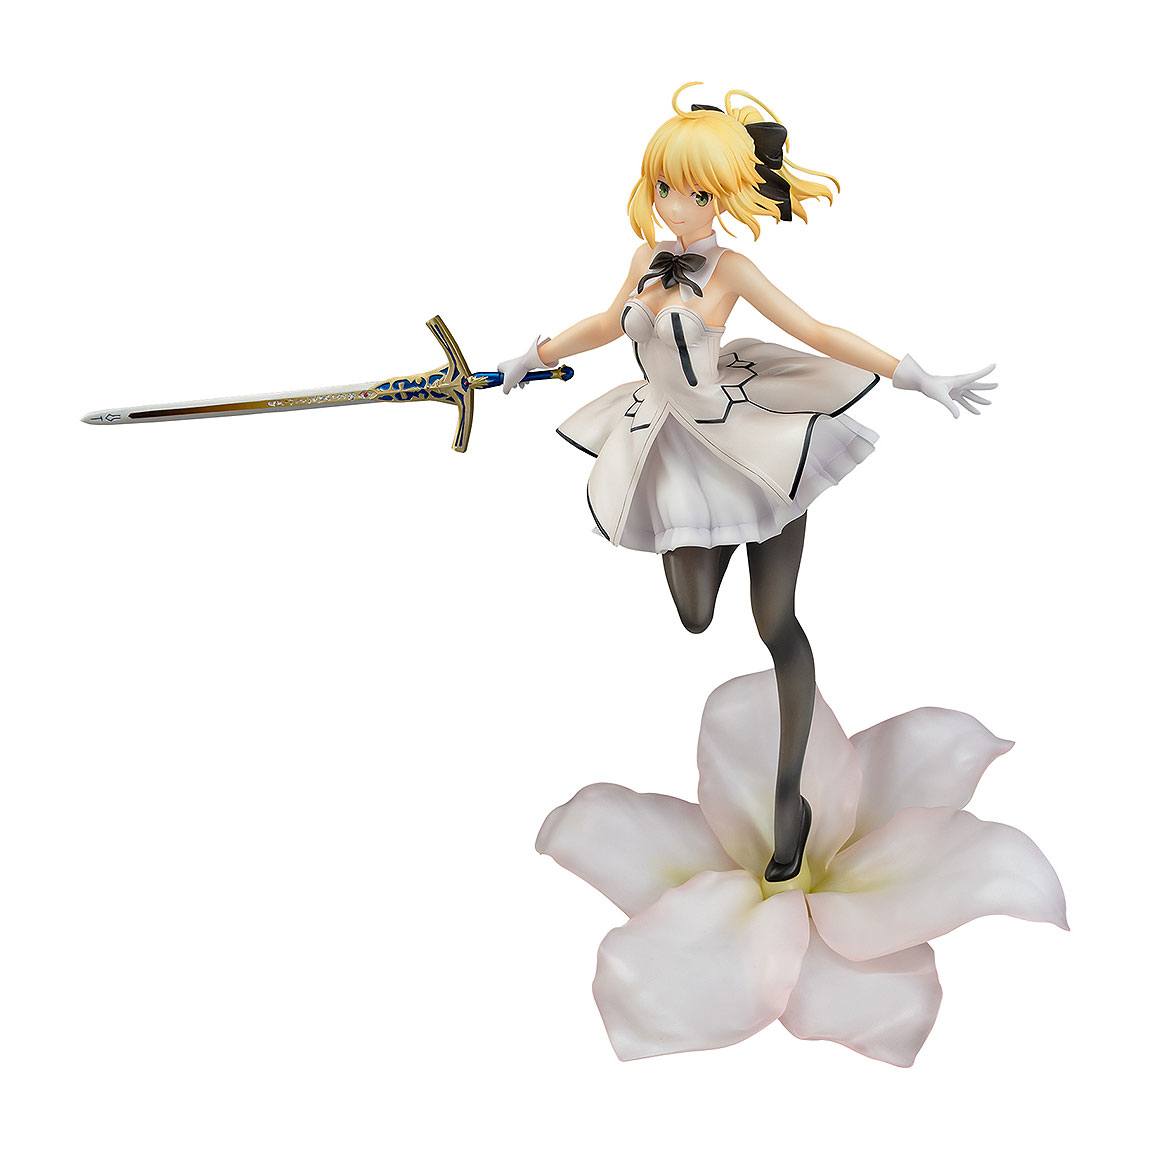 Fate/Grand Order statuette PVC 1/7 Saber/Altria Pendragon (Lily) 28 cm